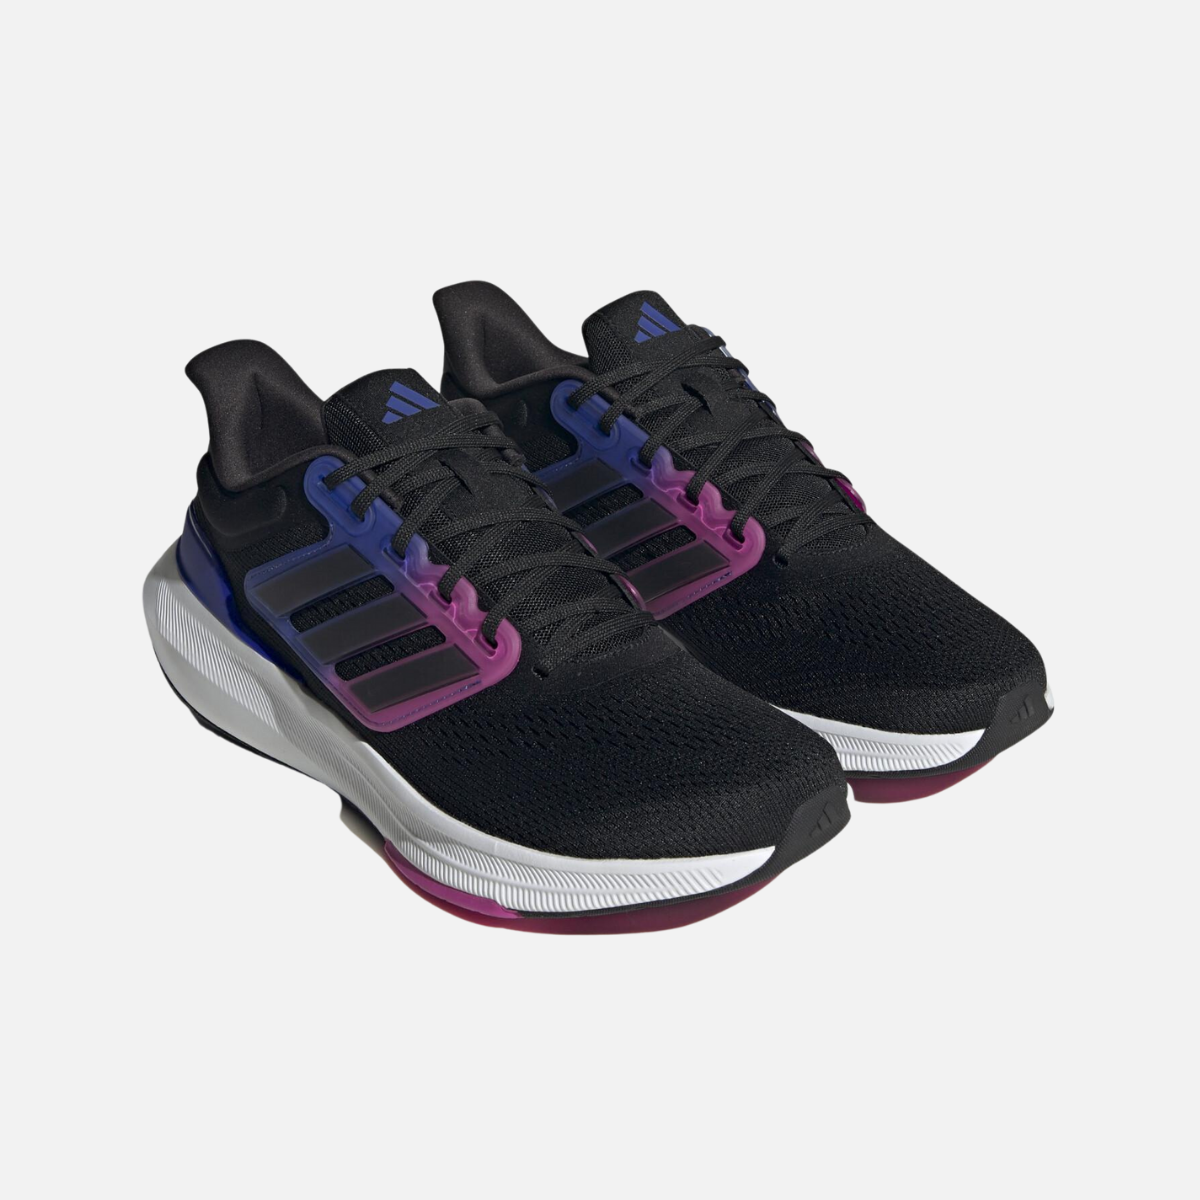 Adidas Ultrabounce Men's Running Shoes